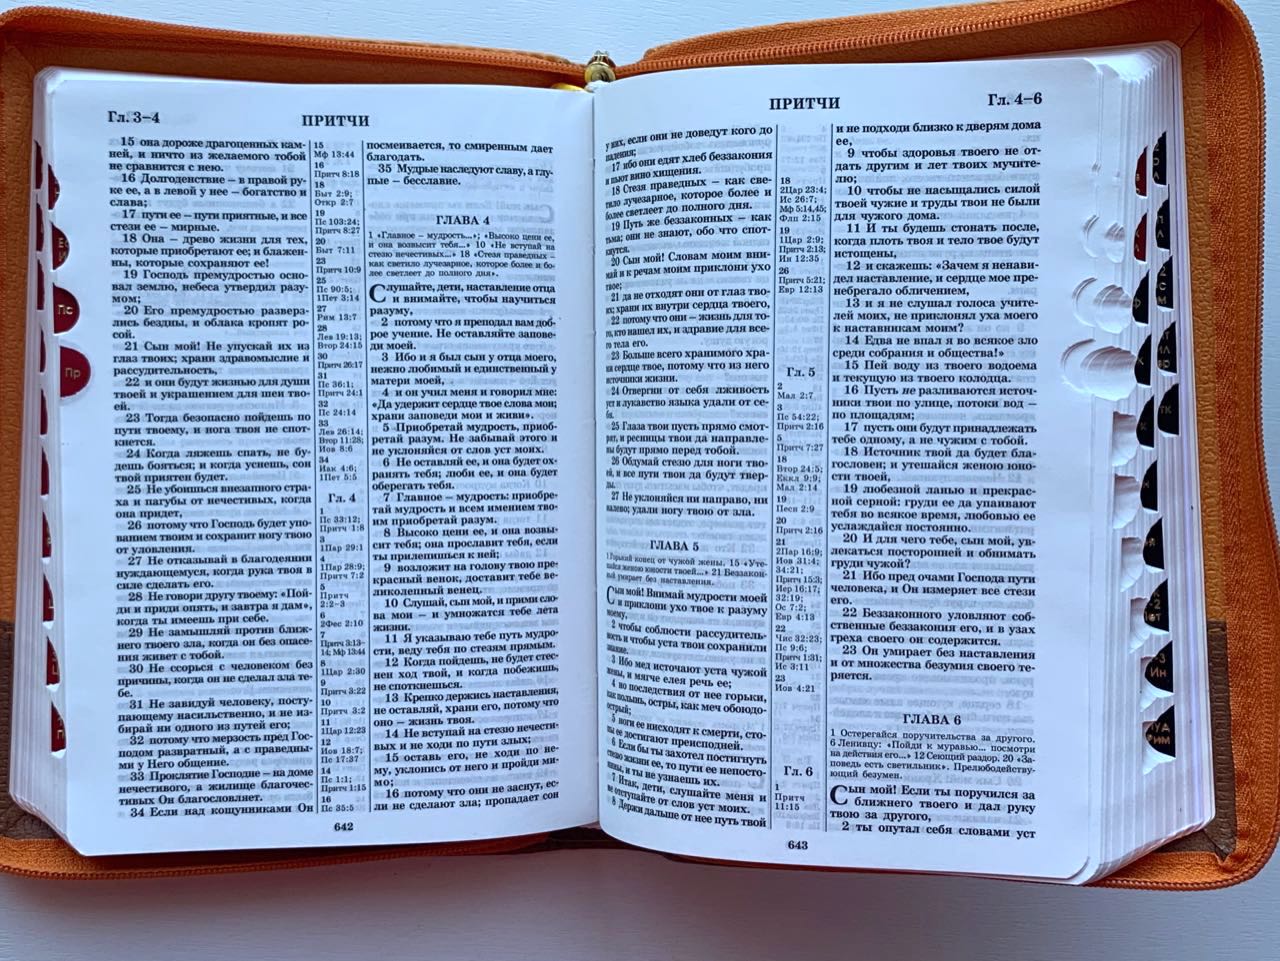 БИБЛИЯ 046zti формат, переплет из искусственной кожи на молнии с индексами, надпись золотом "Библия", цвет светло-коричневый/темно-коричневый, средний формат, 132*182 мм, цветные карты, шрифт 12 кегель